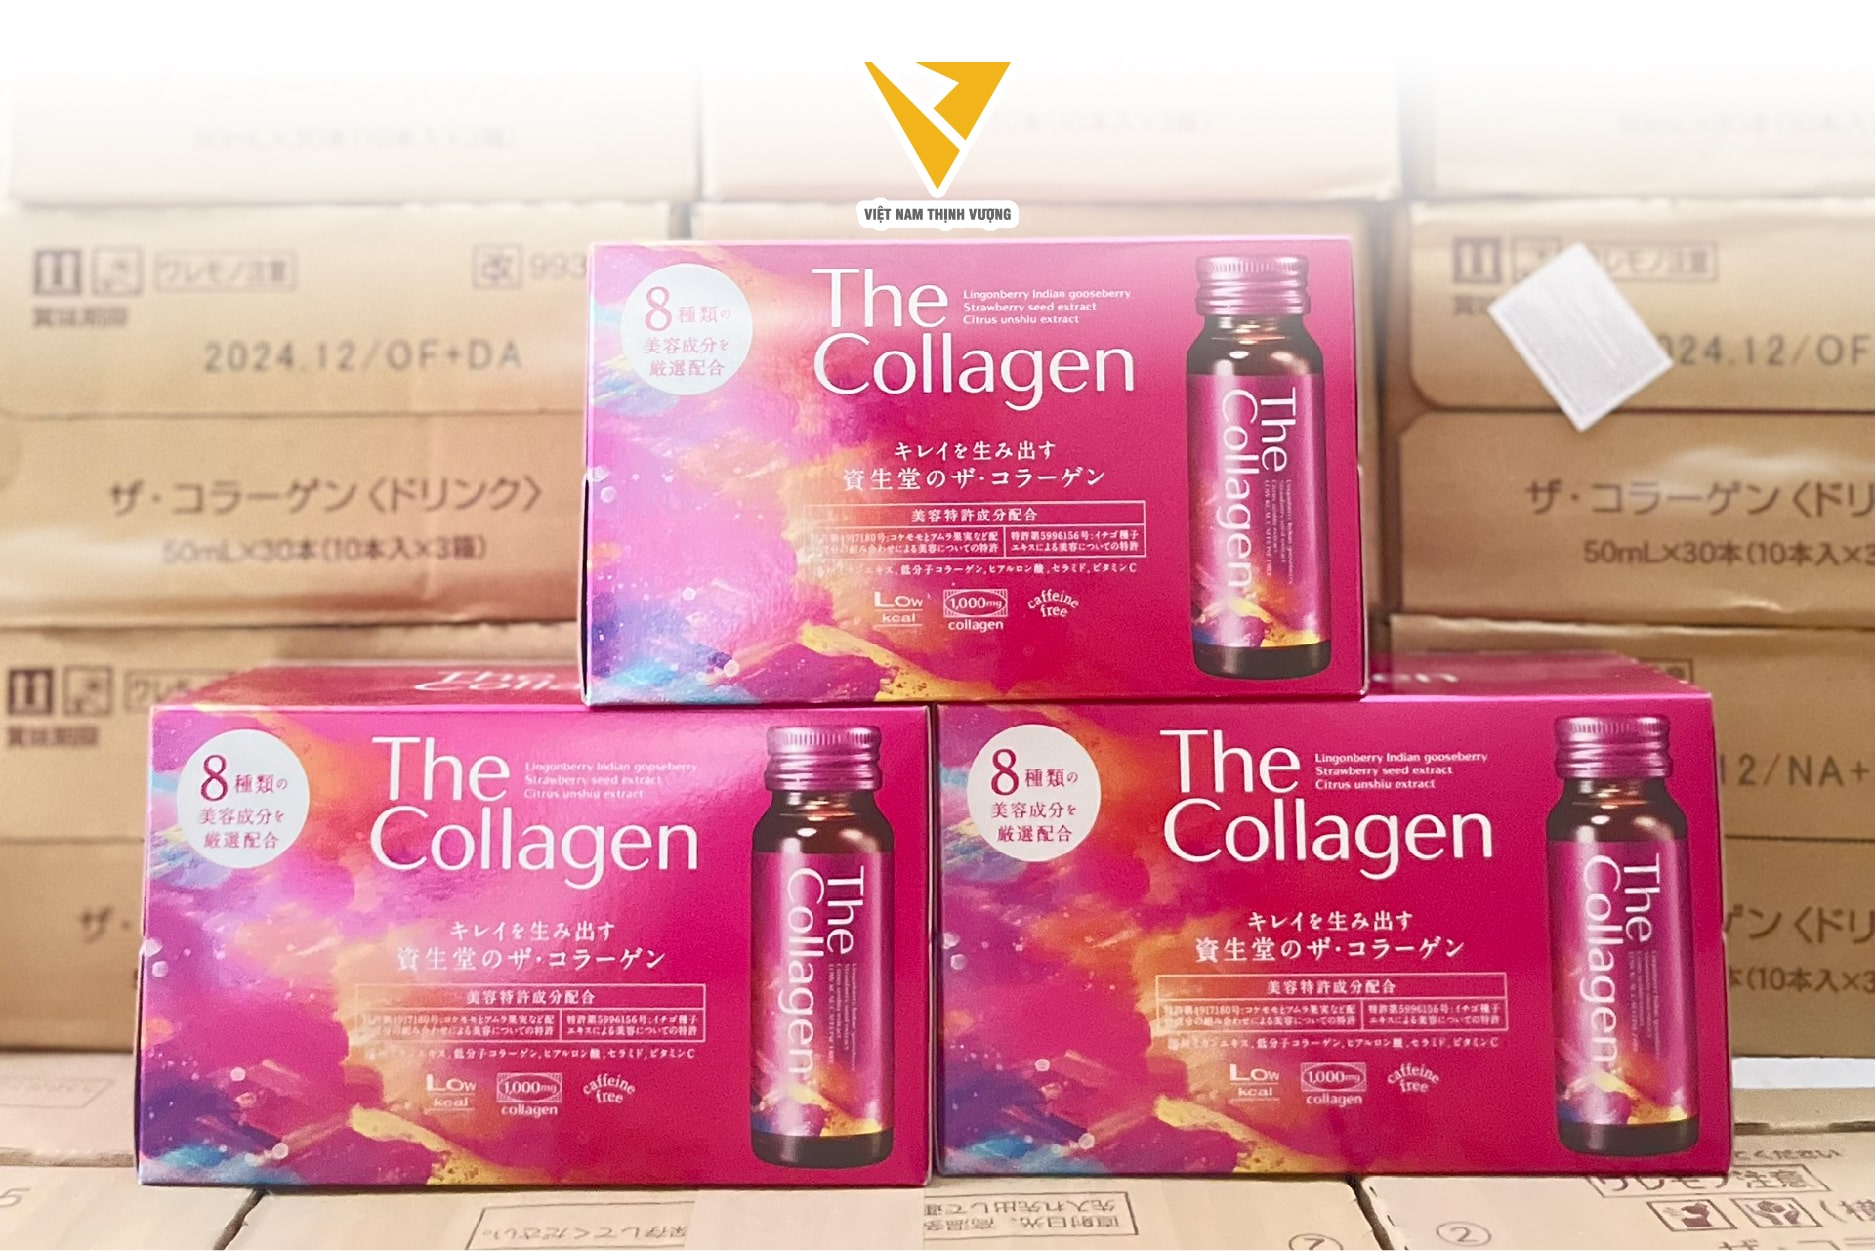 The Collagen sản phẩm chăm sóc sắc hàng đầu Nhật Bản đến từ thương hiệu Shiseido